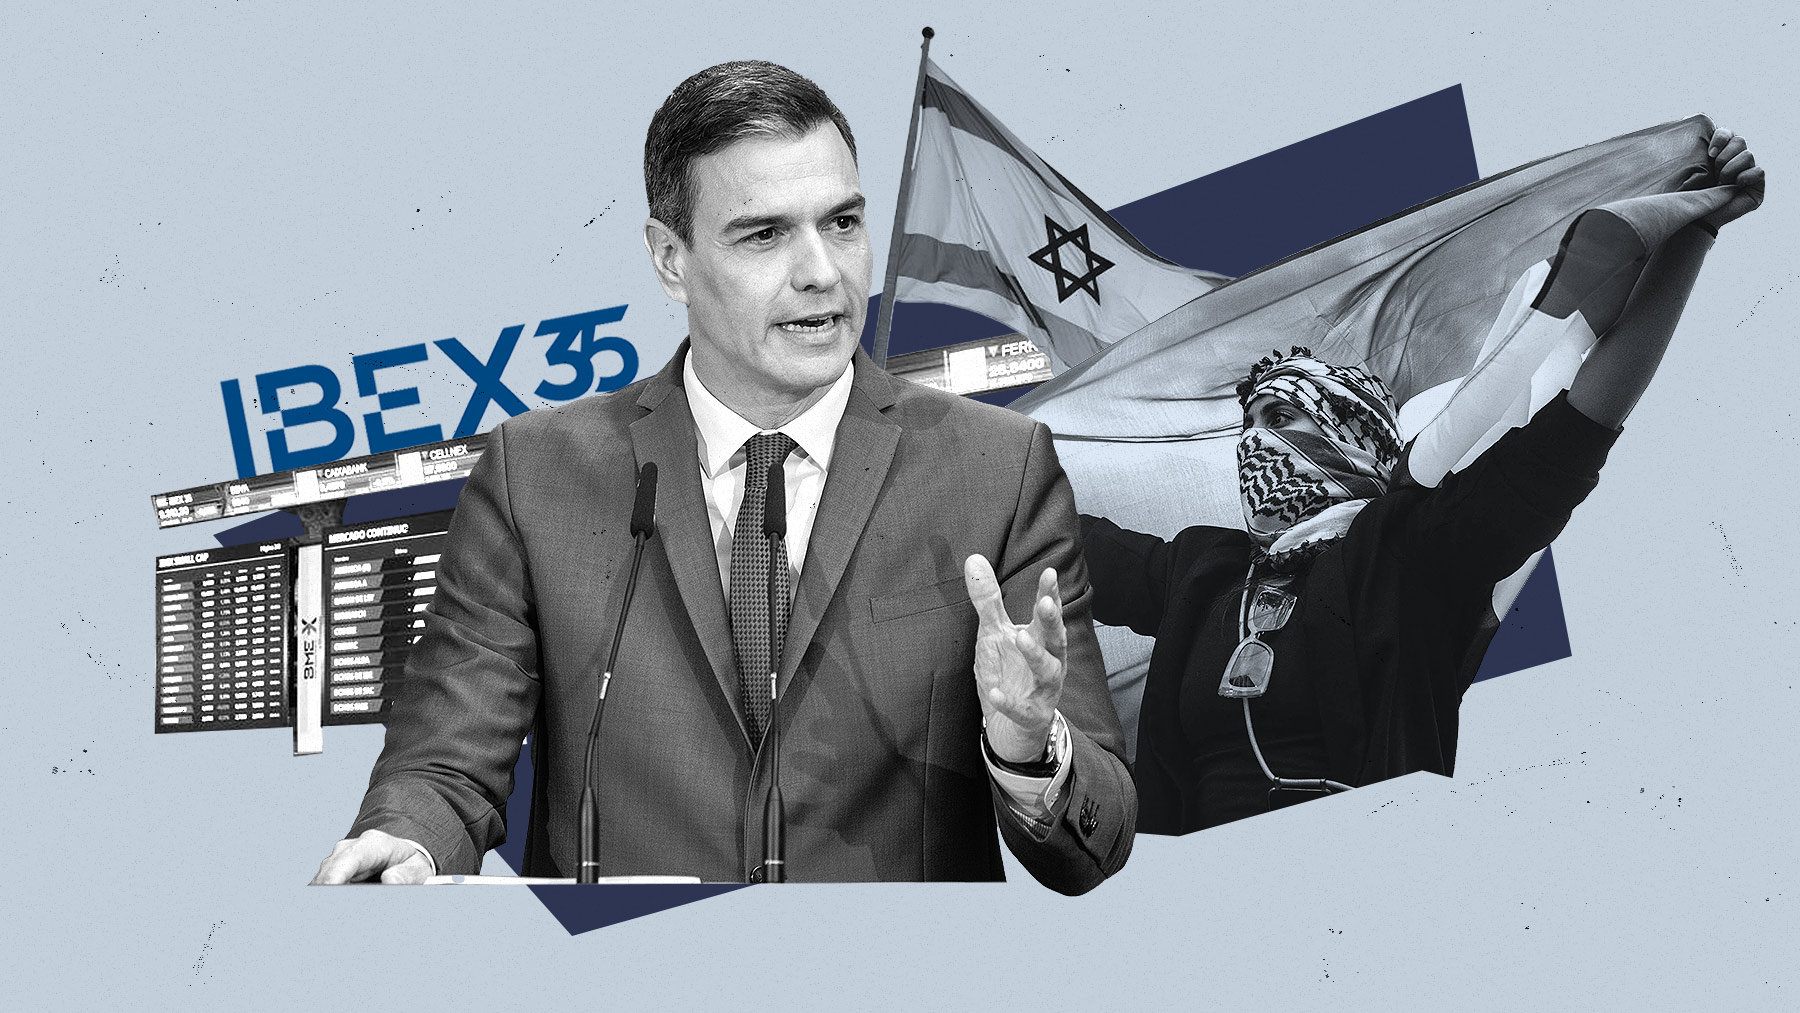 La inestabilidad política provocada por la investidura de Pedro Sánchez y sus negociaciones perjudica al Ibex 35